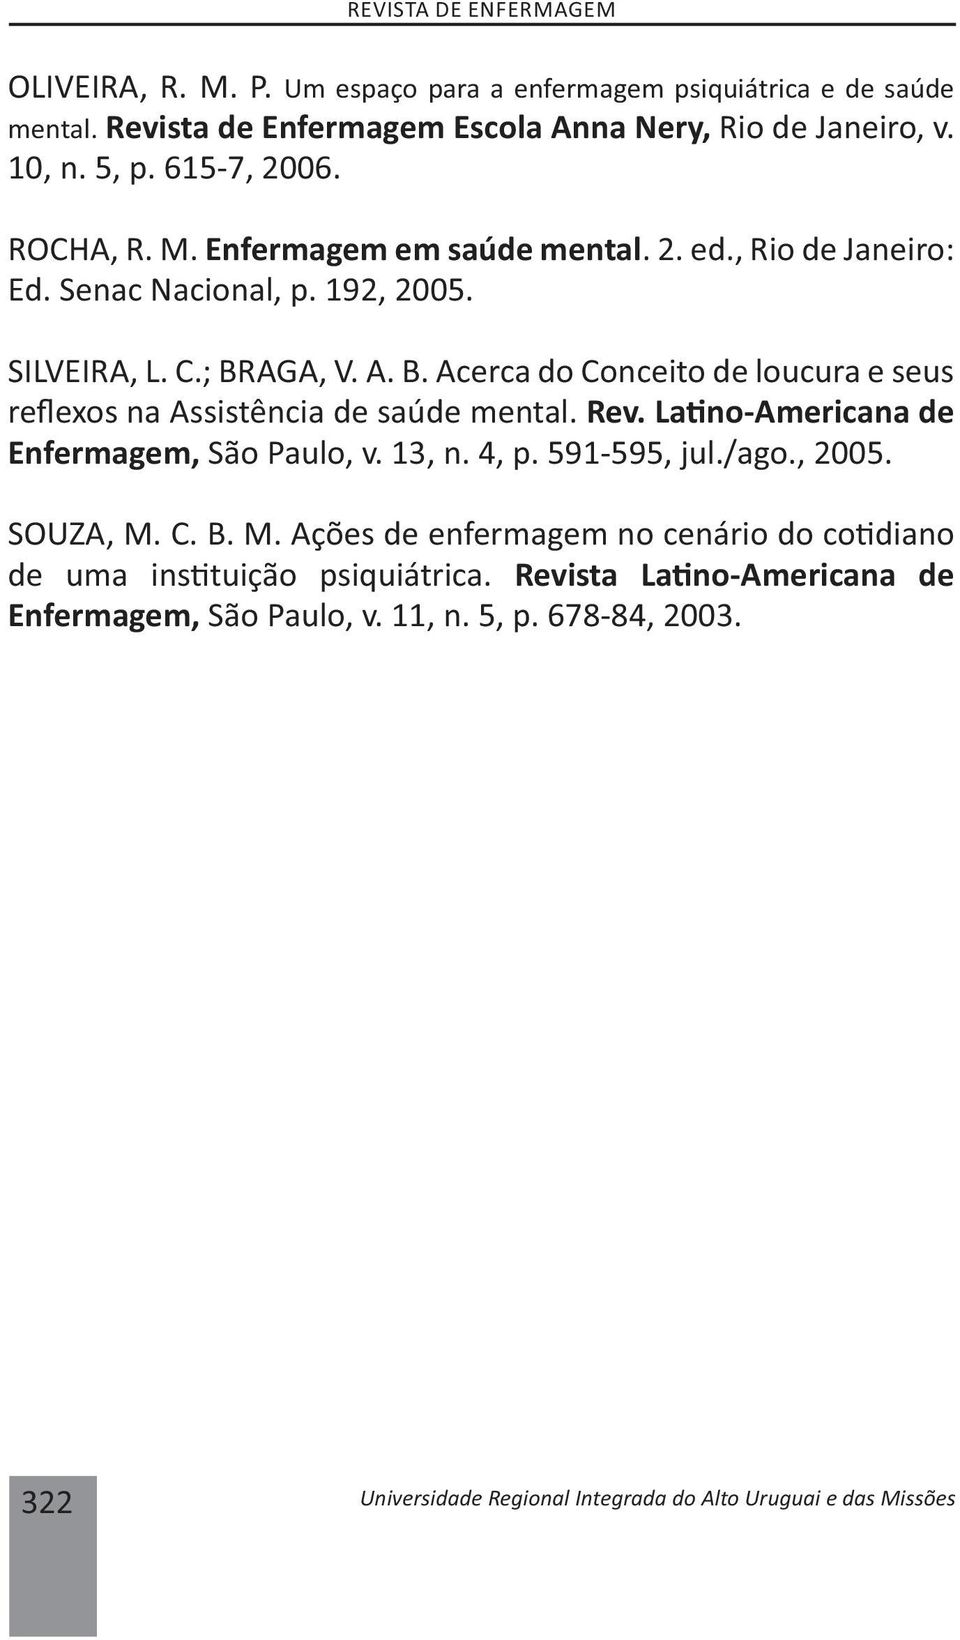 AGA, V. A. B. Acerca do Conceito de loucura e seus re exos na Assistência de saúde mental. Rev. La no-americana de Enfermagem, São Paulo, v. 13, n. 4, p. 591-595, jul./ago., 2005.